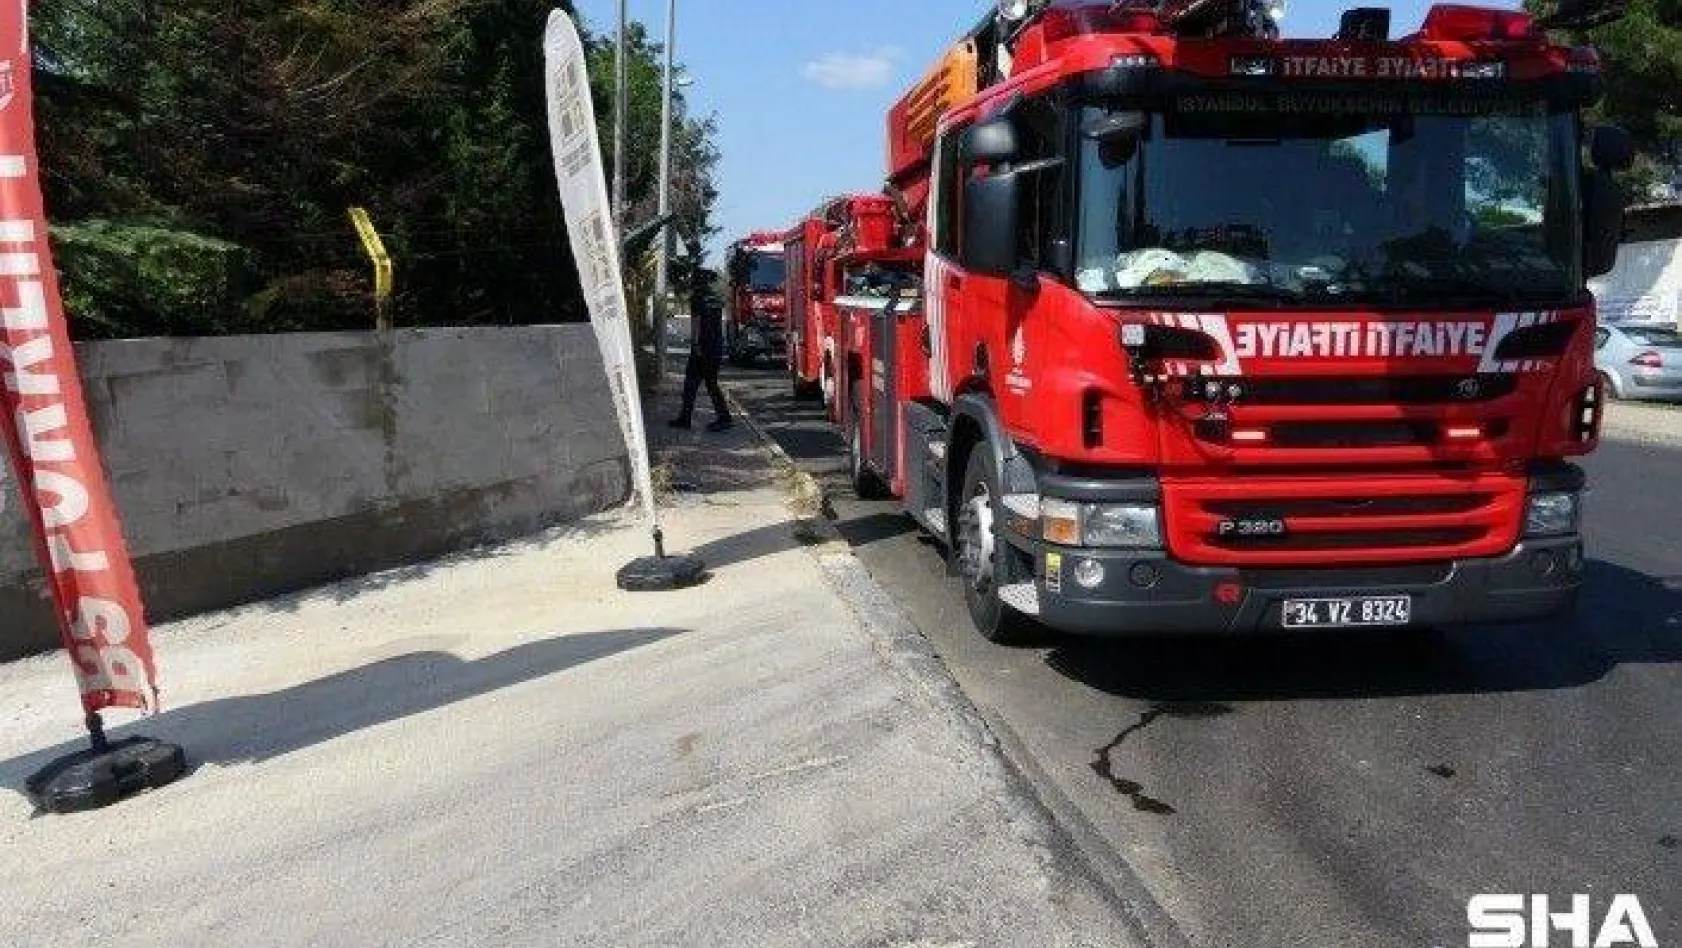 Tuzla'da iş yerinde çıkan yangın itfaiye ekiplerince söndürüldü